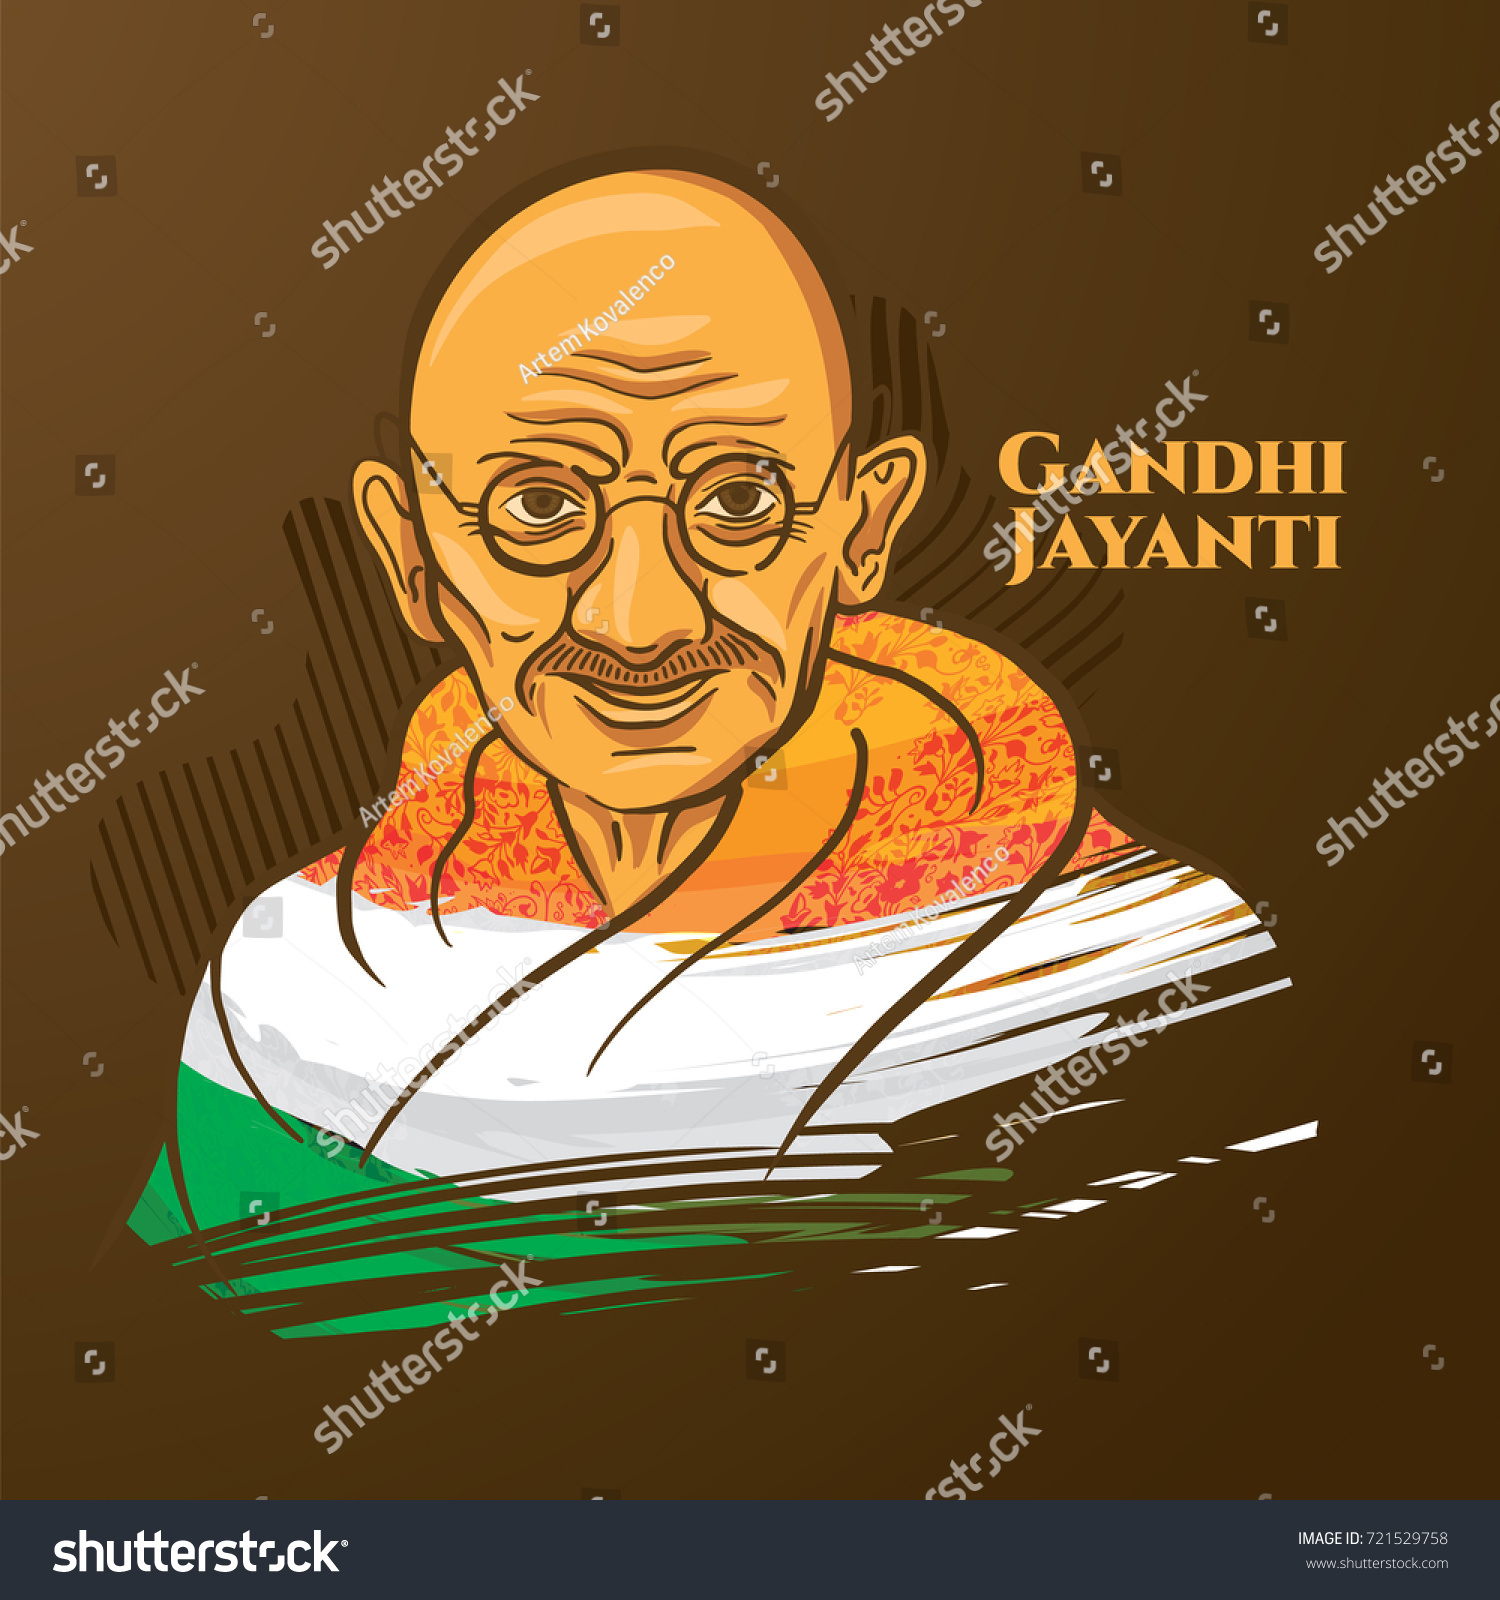 33 Mahatma gandhi’s birthday Images, Stock Photos & Vectors | Shutterstock